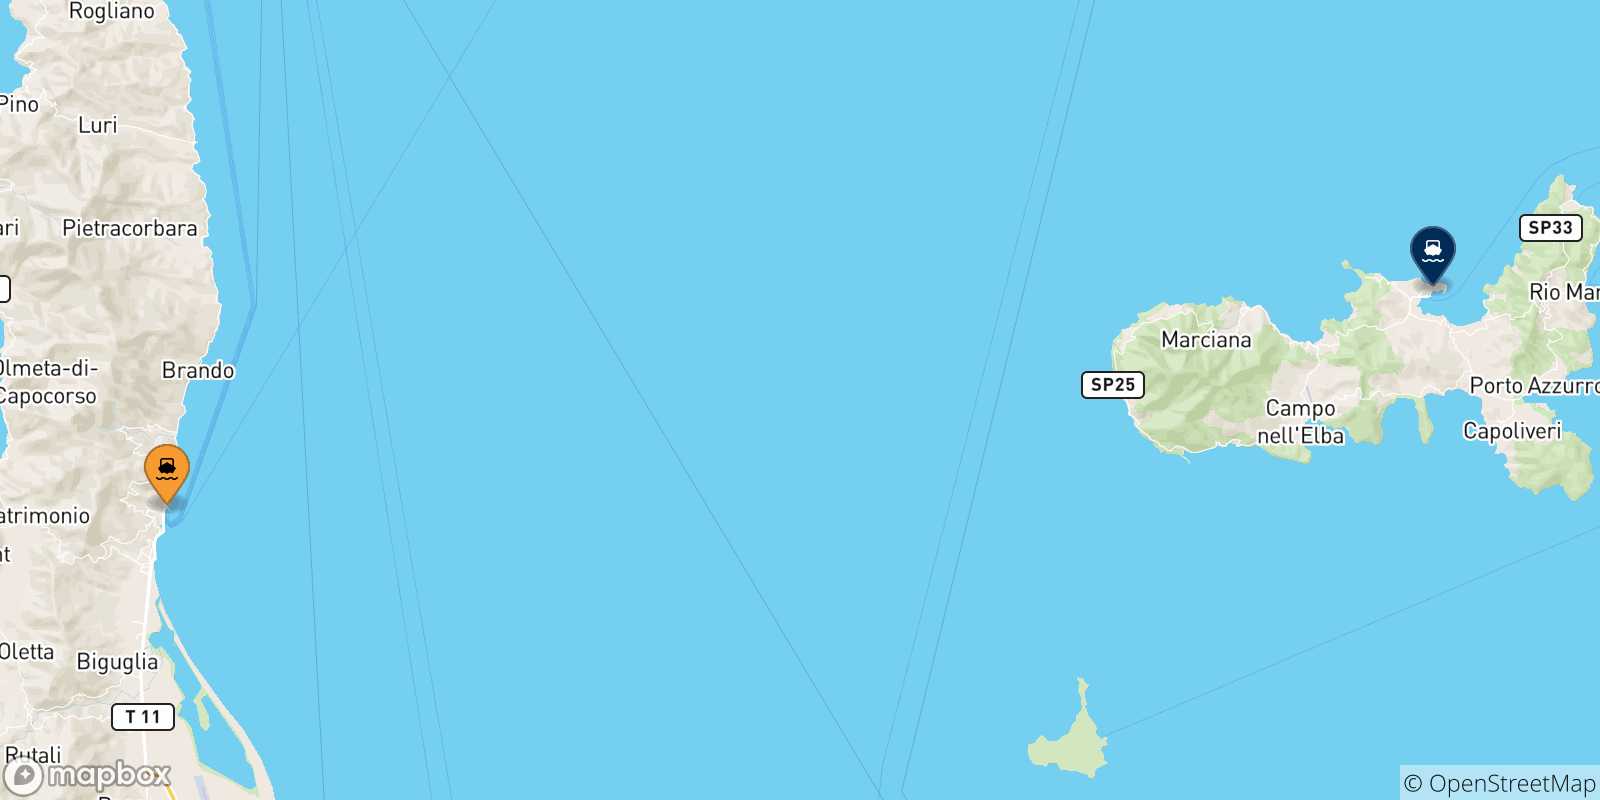 Mappa delle possibili rotte tra Bastia e l'Isola D'elba